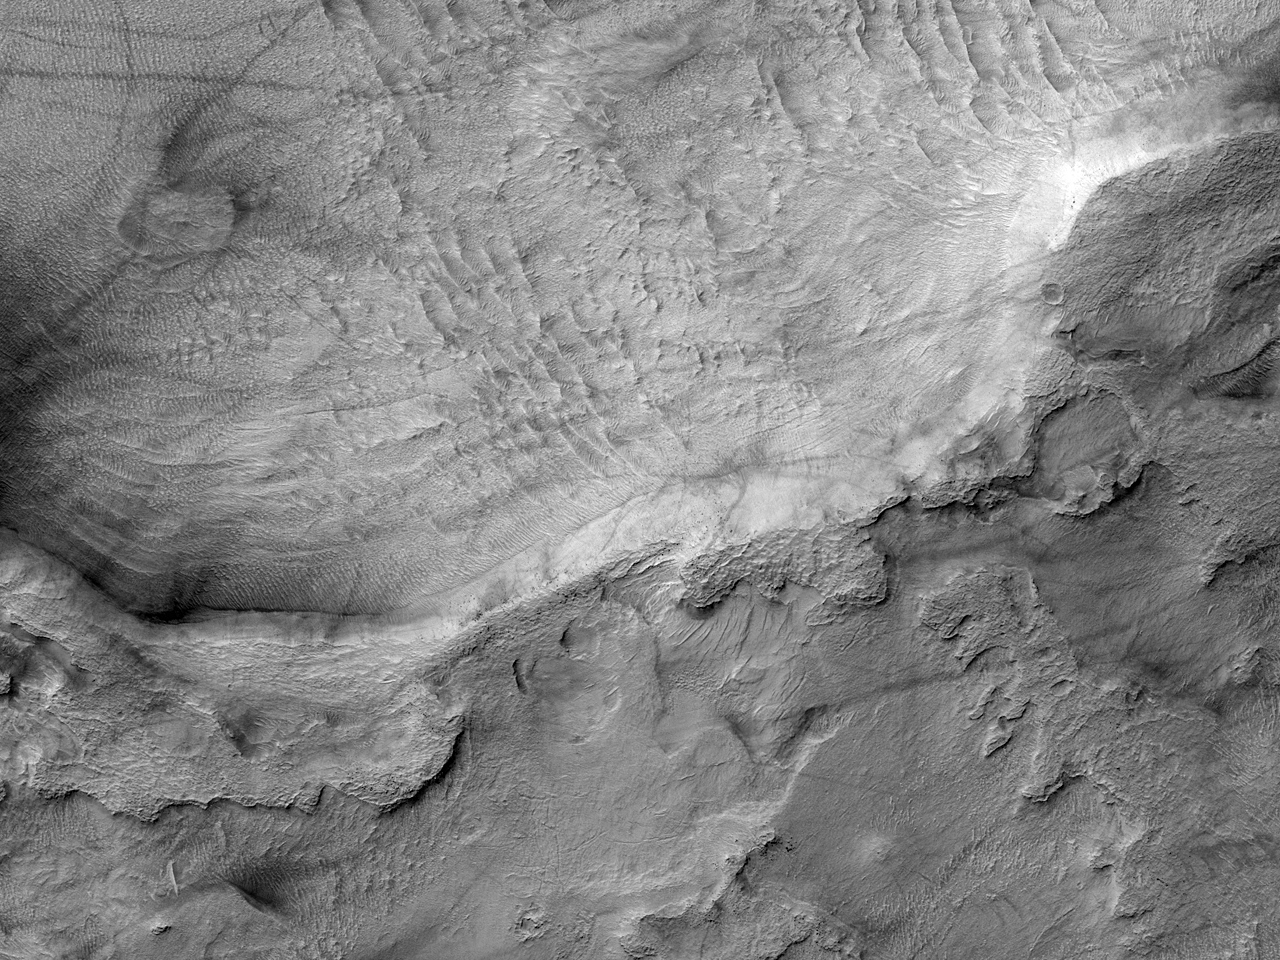 Ударний кратер на днi рівнини Hellas Planitia